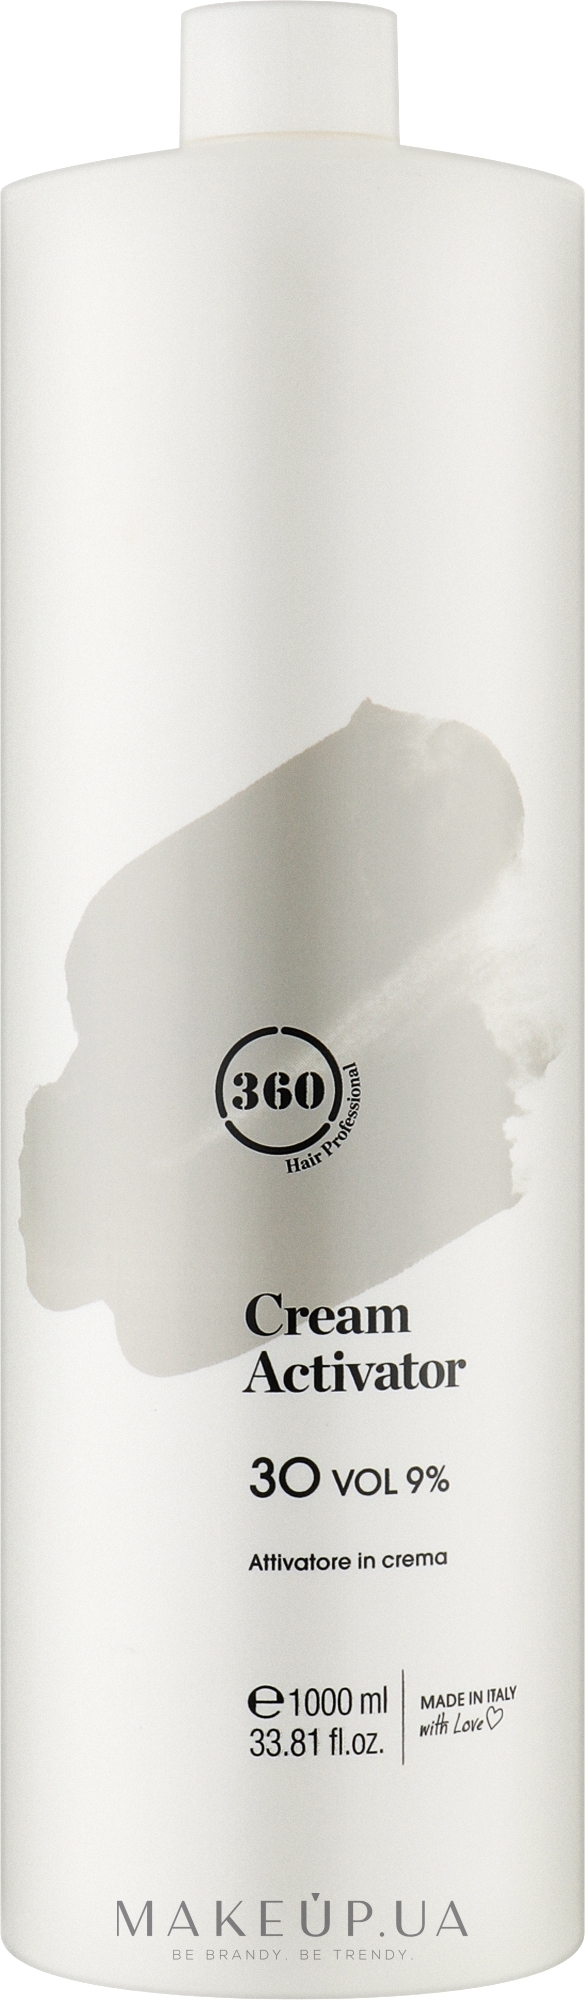 Крем-активатор 30 - 360 Cream Activator 30 Vol 9% — фото 1000ml